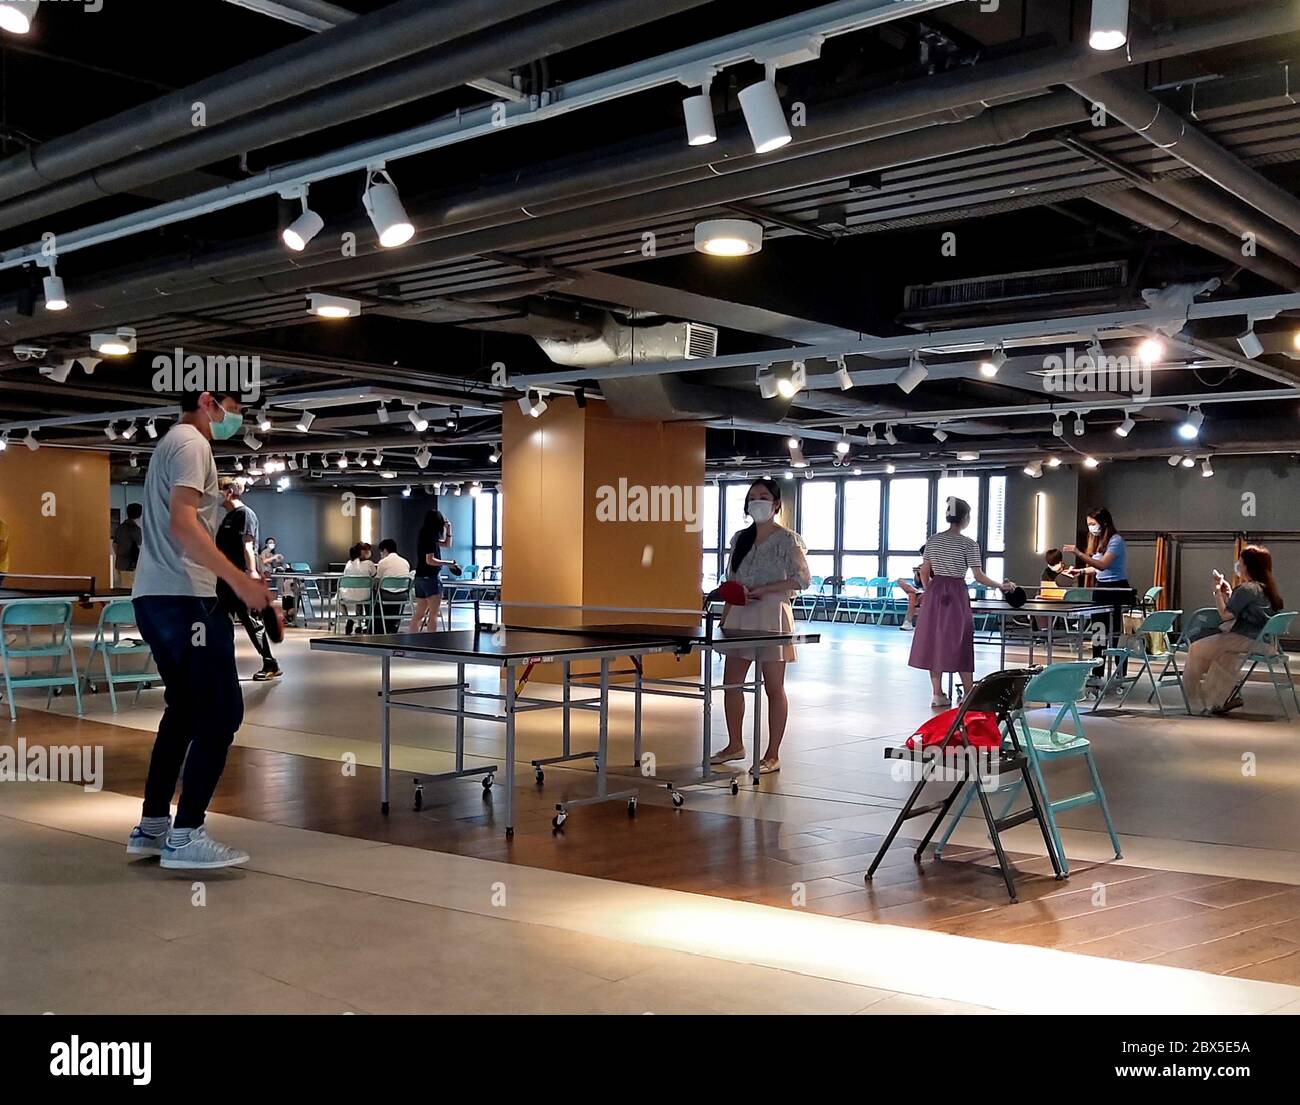 Jeux de ping-pong dans une salle de shopping Banque D'Images